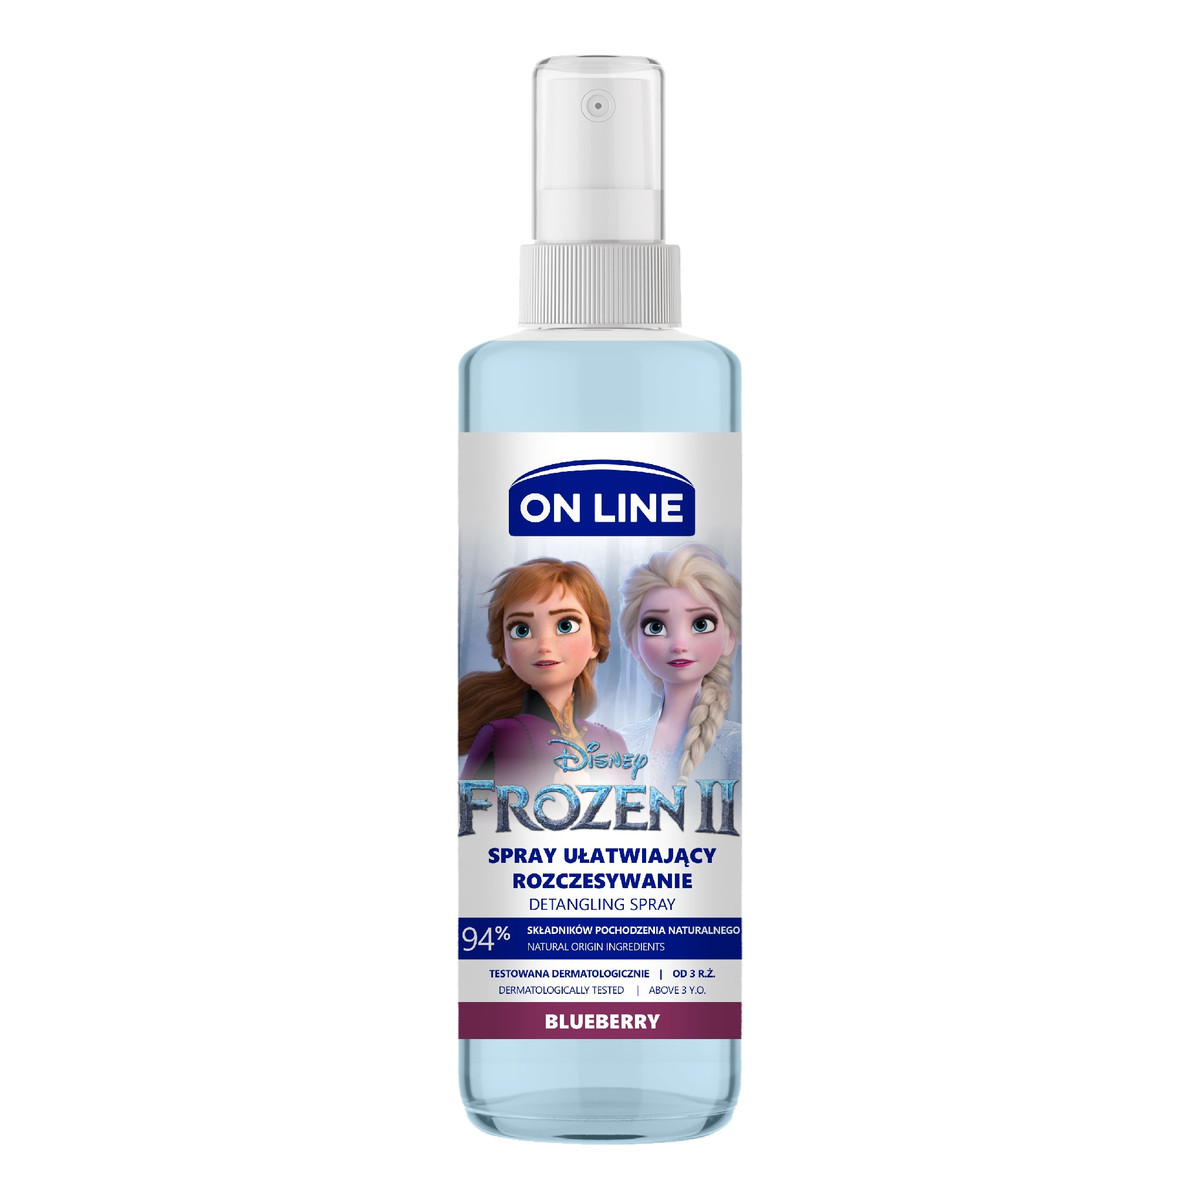 On Line Disney Spray do włosów ułatwiający rozczesywanie Frozen II - Blueberry 200ml